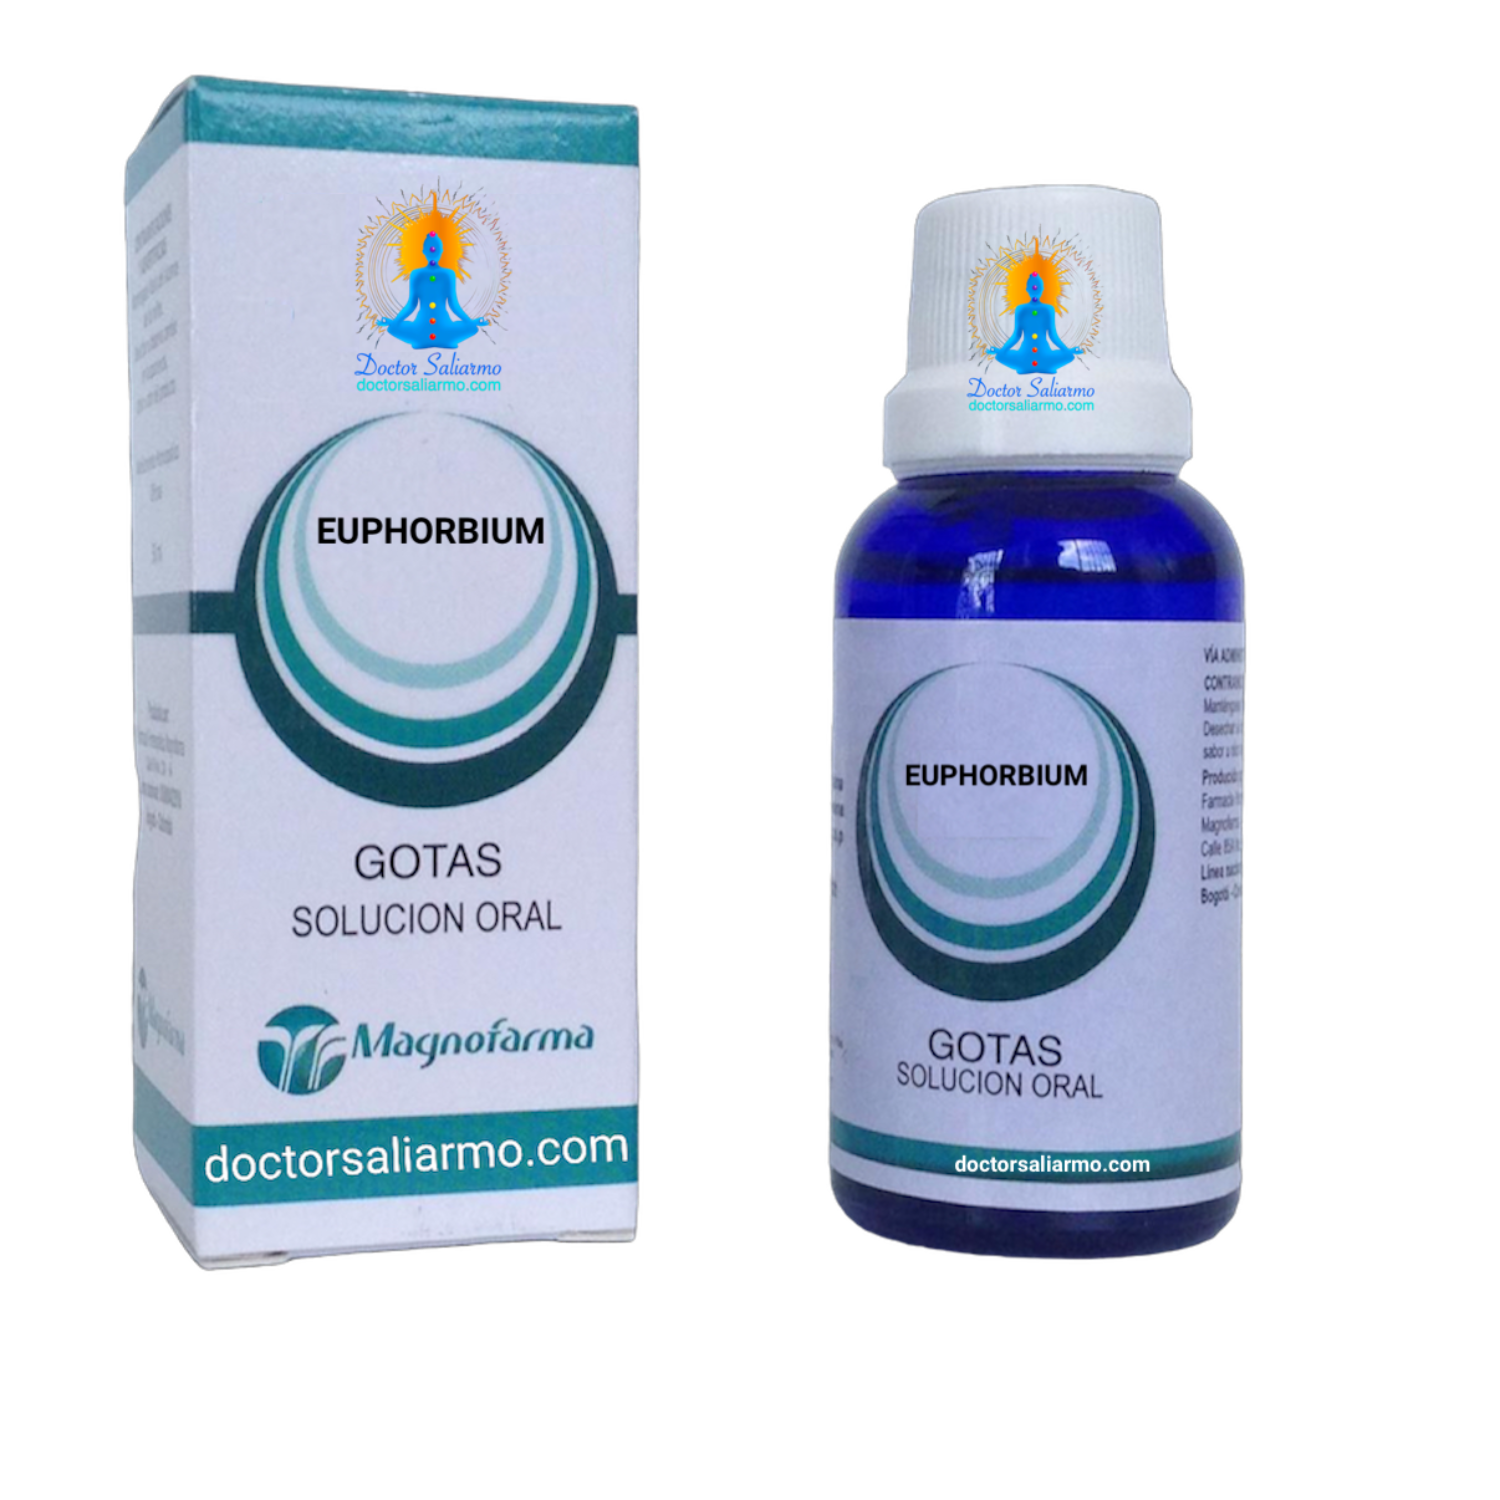 Euphorbium medicamento homeopático usado en el tratamiento de sinusitis y rinosinusitis